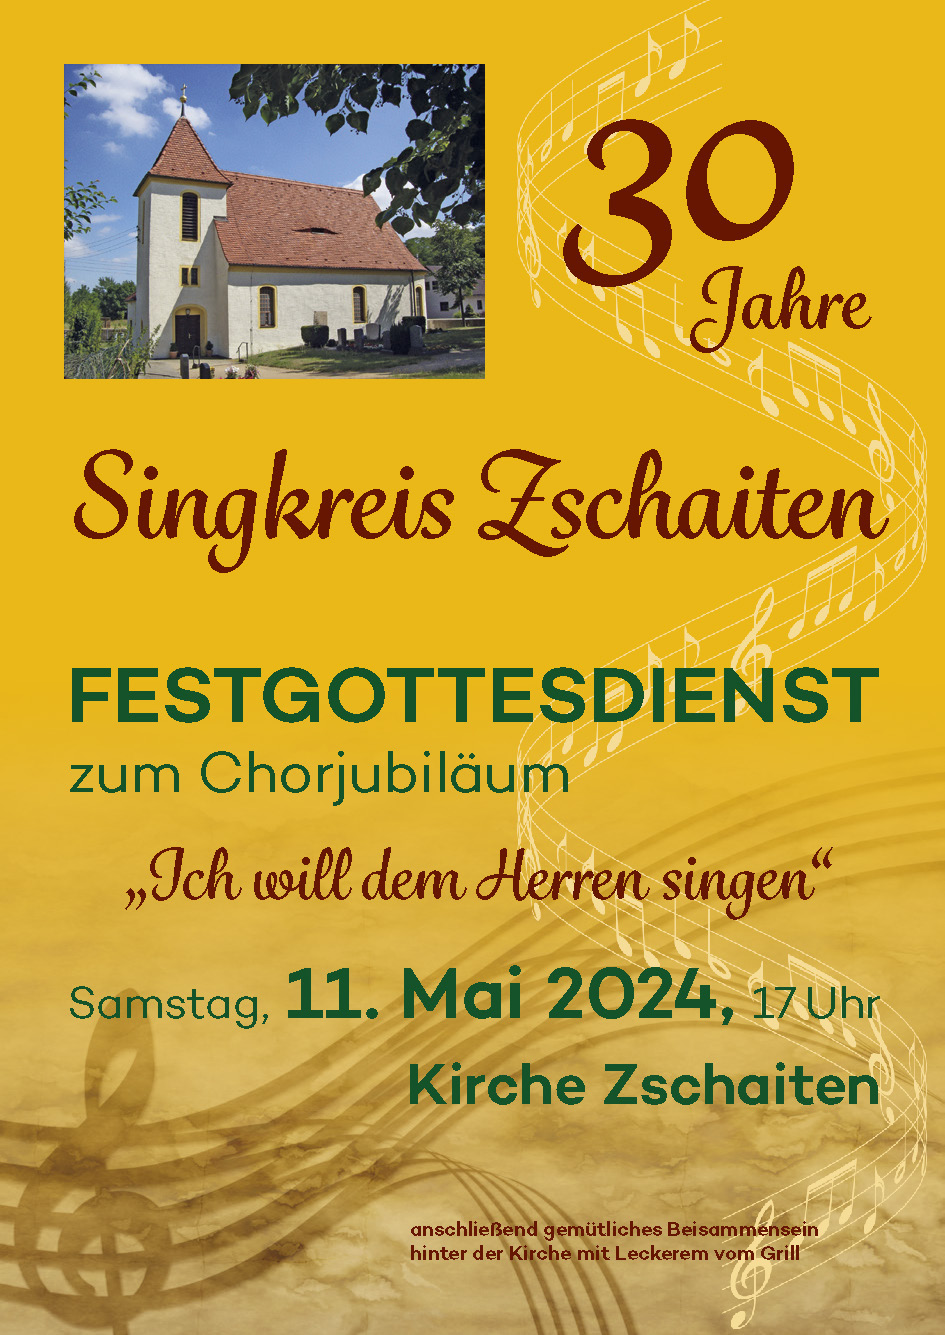 Festgottesdienst zum Chorjubiläum am 11. Mai in Zschaiten